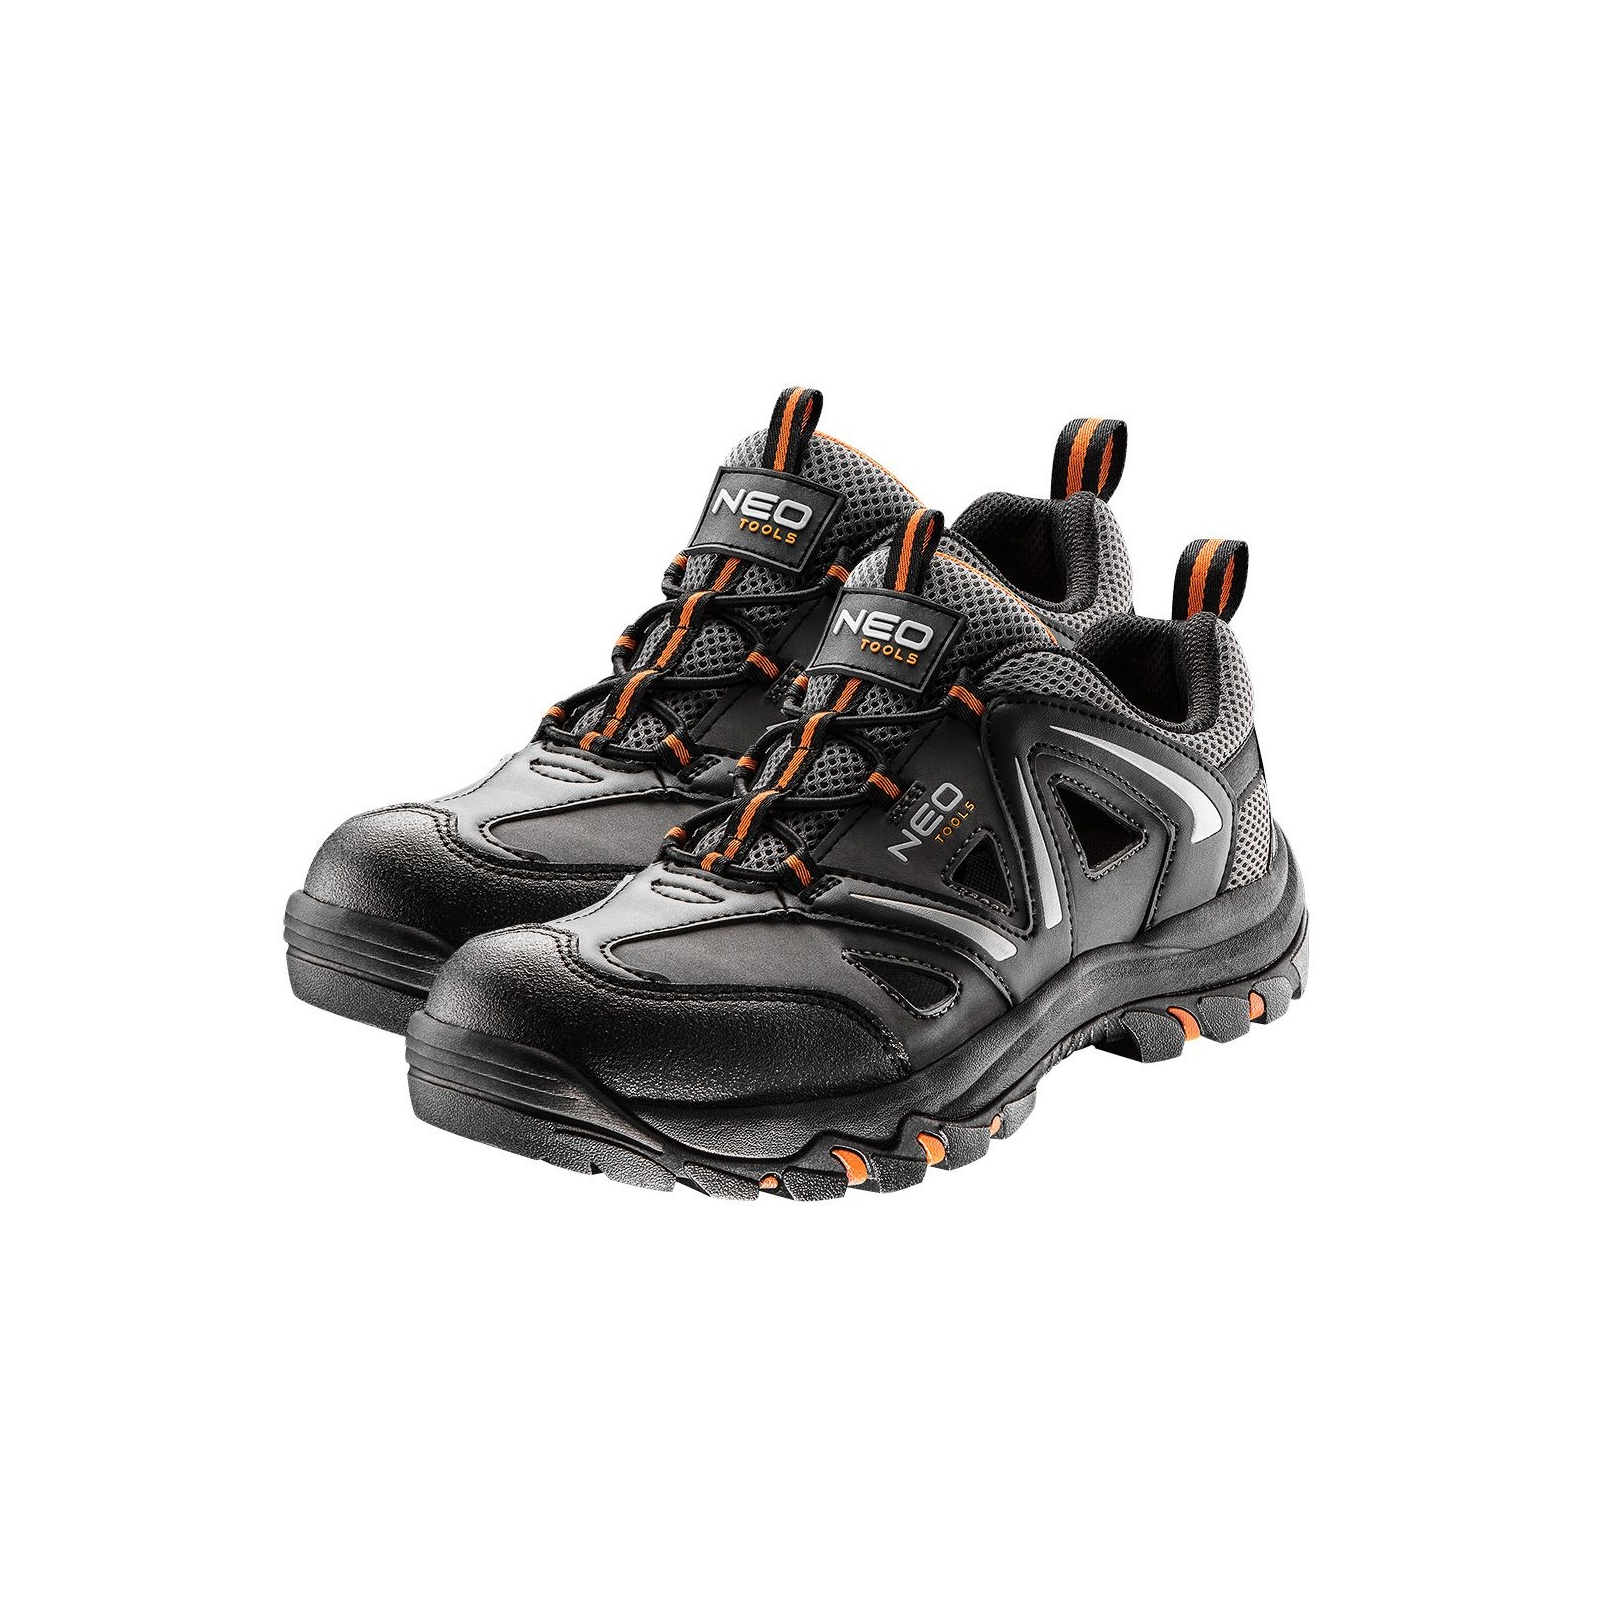 Ботинки рабочие Neo Tools кроссовки дышащие, подошва EVA, класс защиты OB, SRA, р.45 (82-726)